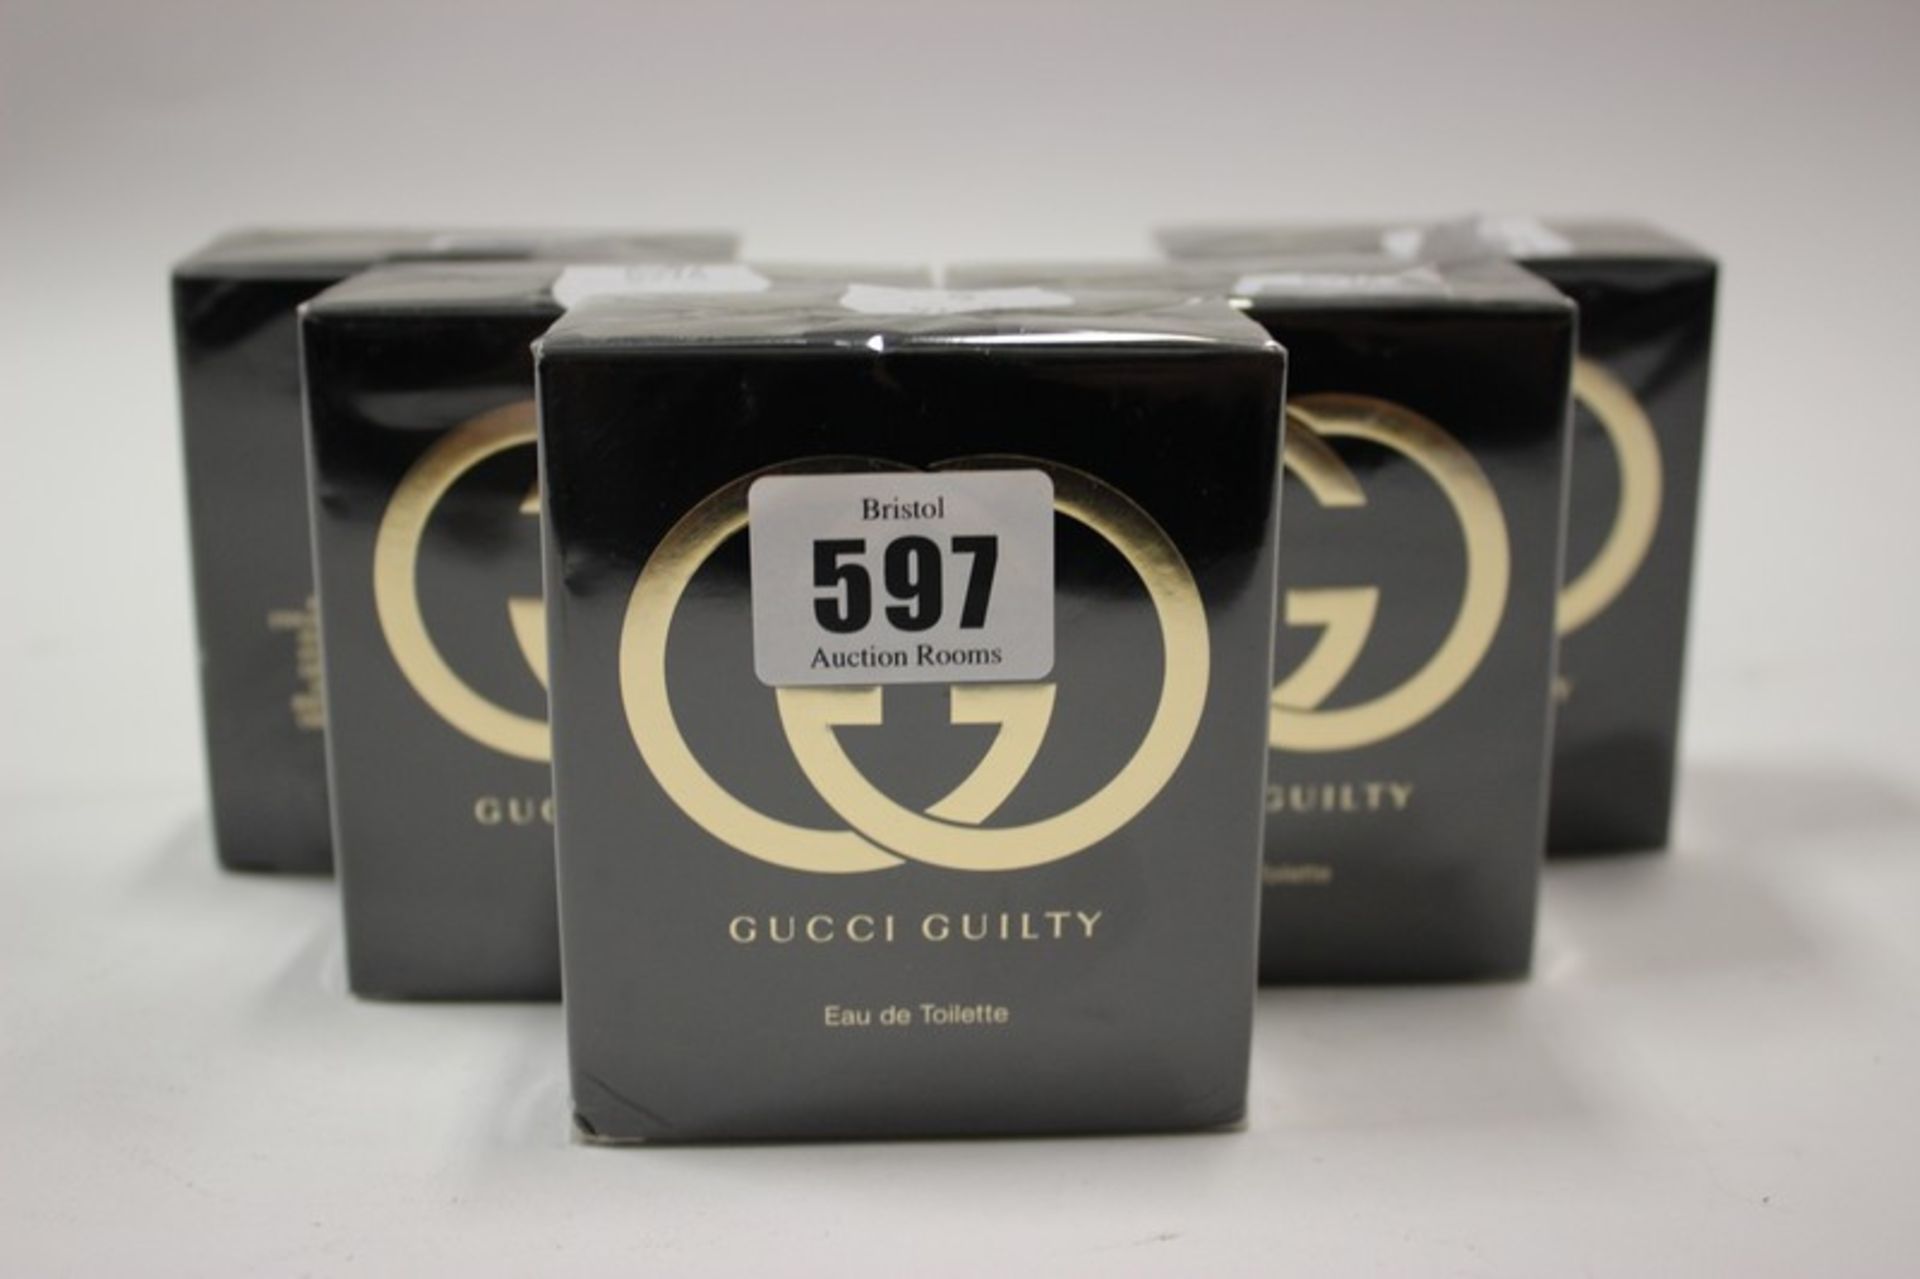 Five Gucci Guilty eau de toilette (50ml).